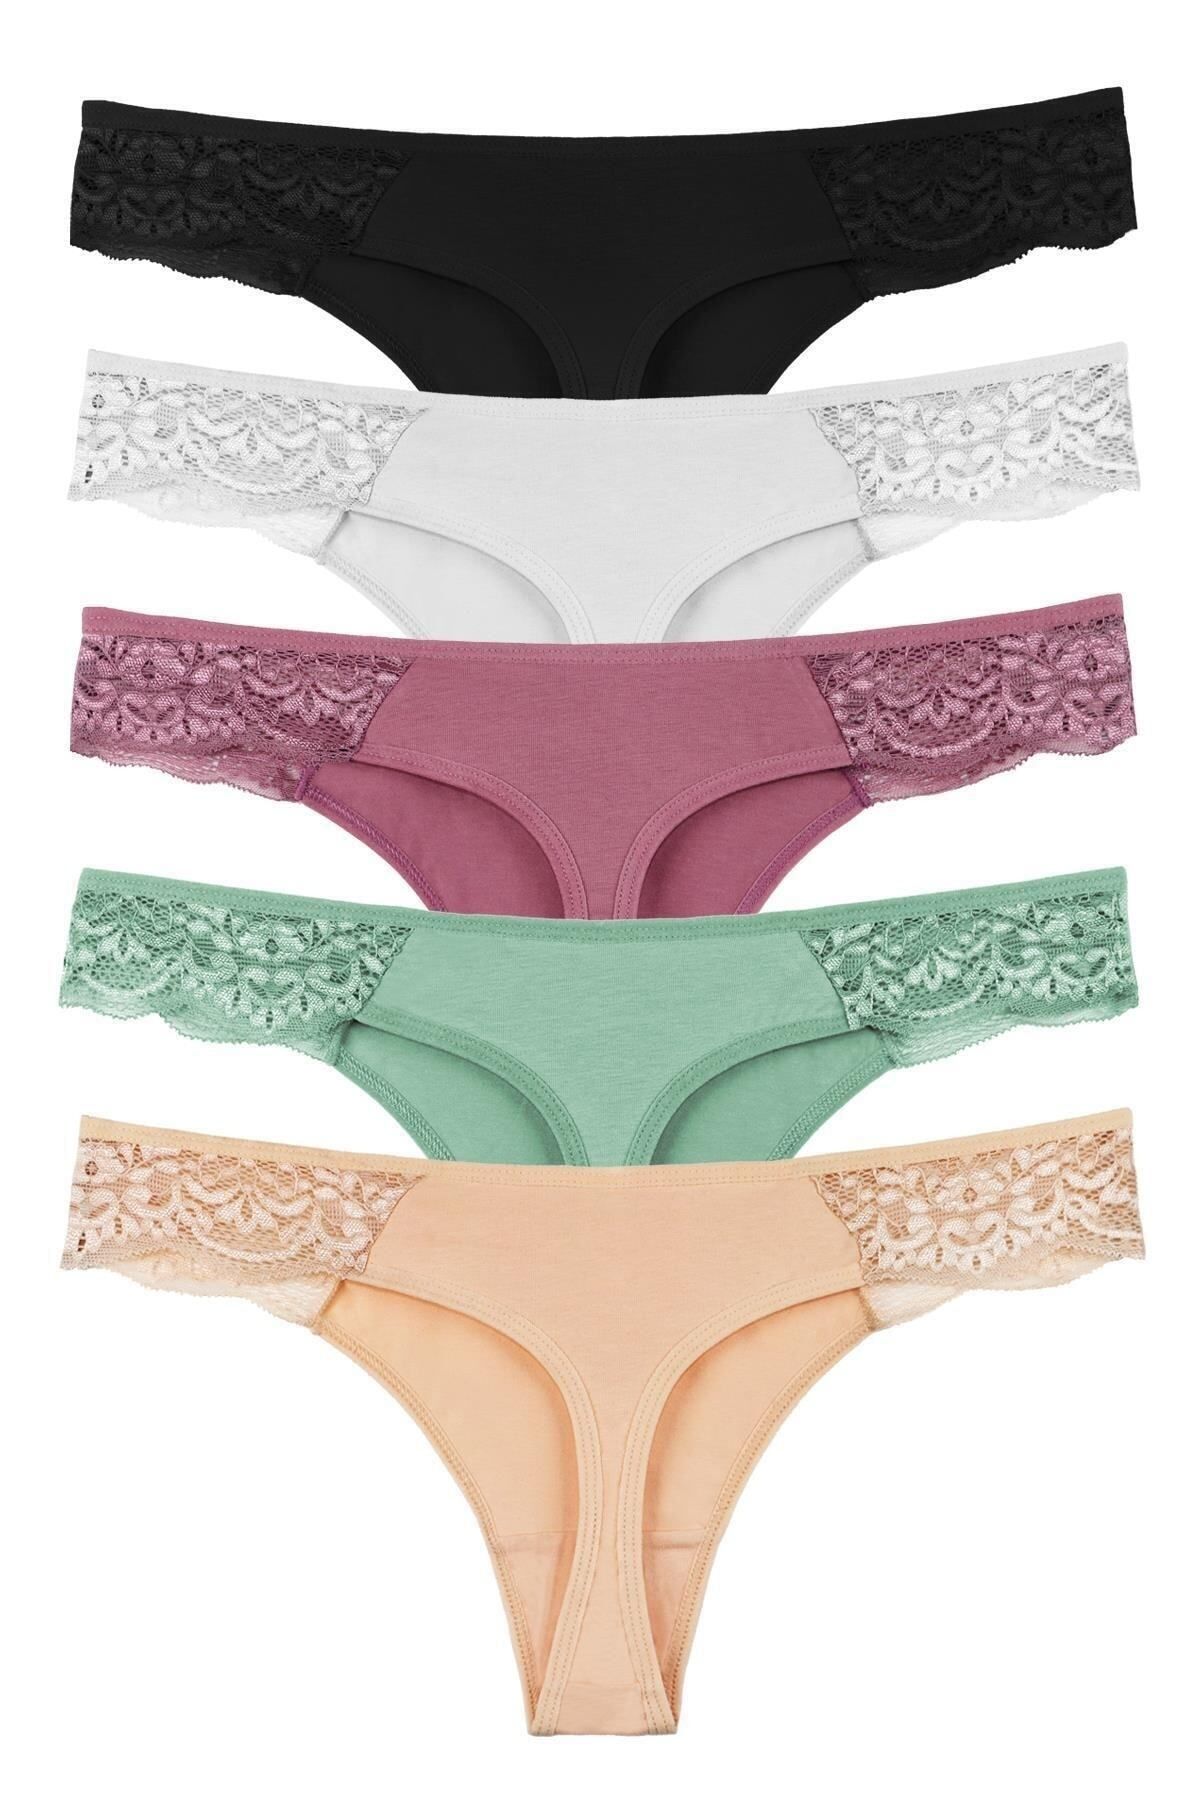 Sensu Women's Lace Detailed Thong 5-Piece Panties Set - Kts2075 (WIDE SIZE)  - Trendyol